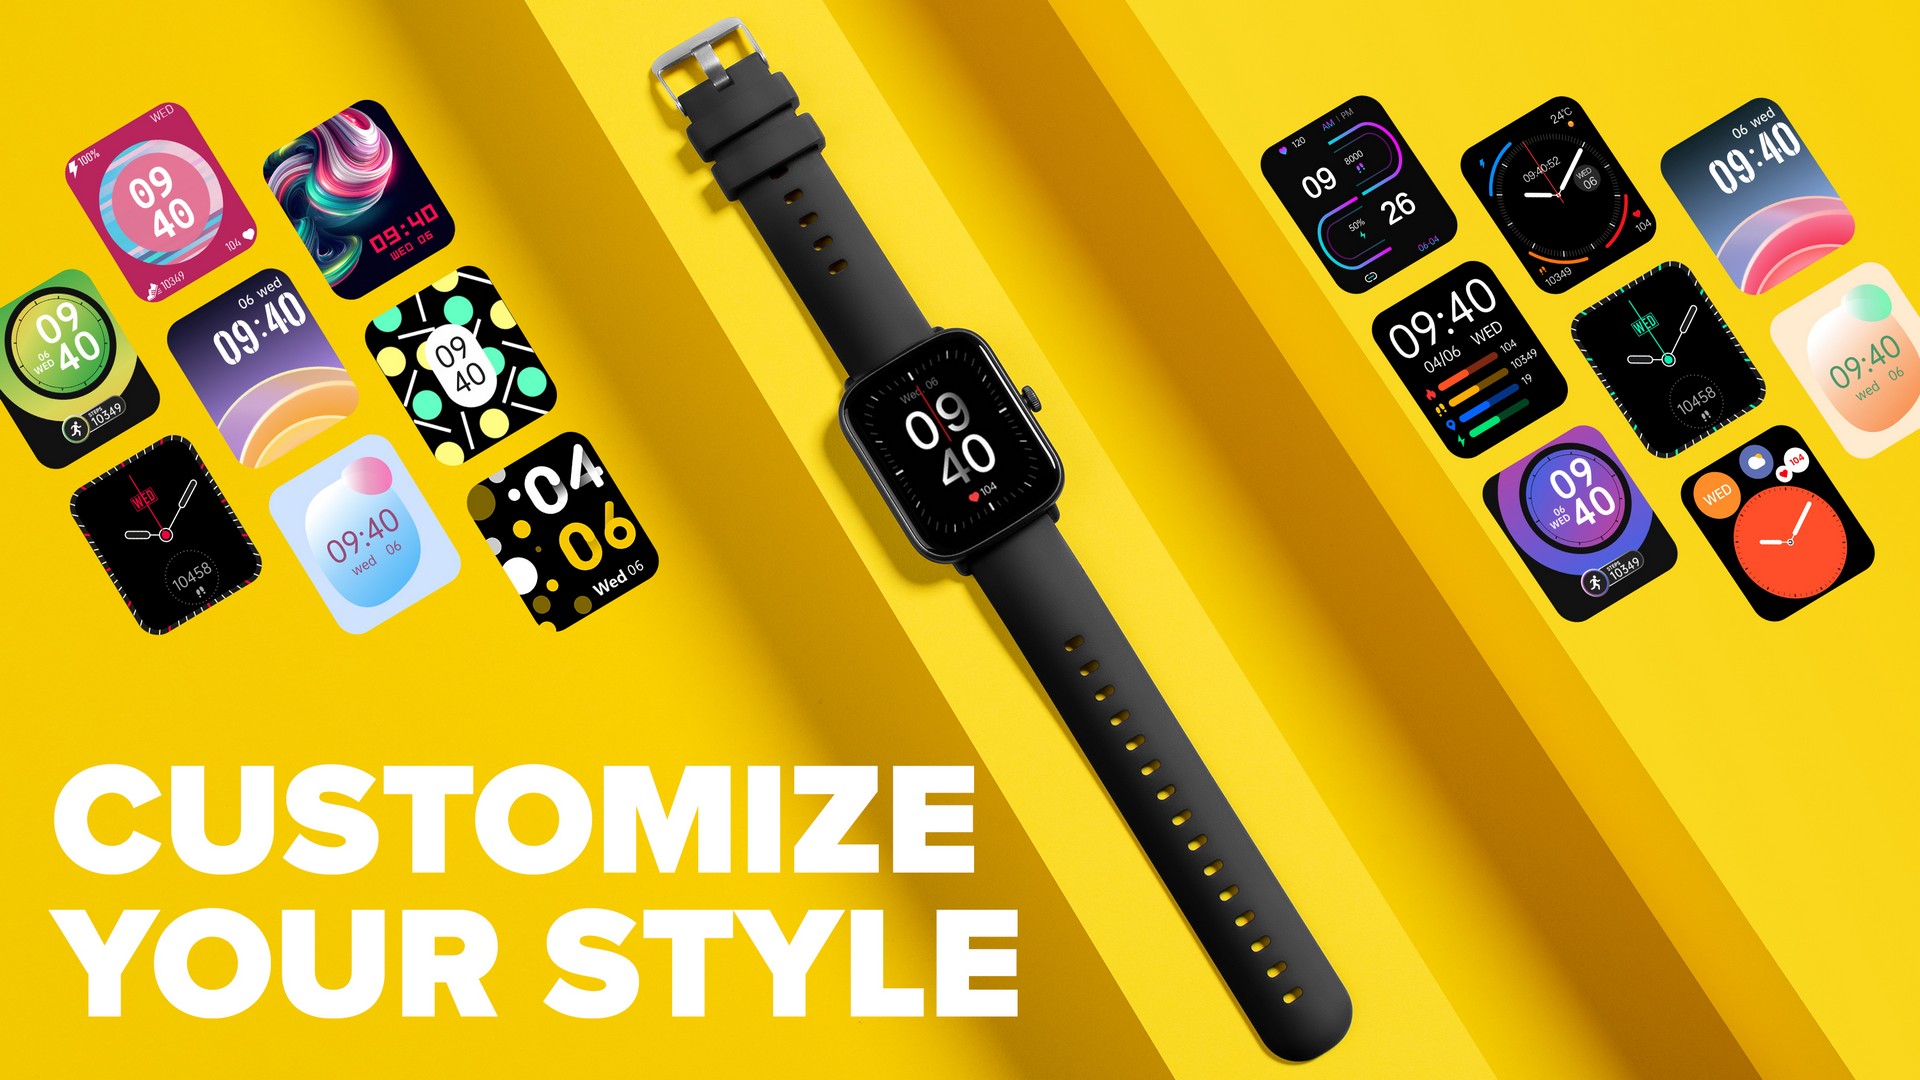 Chytré hodinky Niceboy Watch Lite 3 podporujú mobilnú aplikáciu FitCloudPro, s pomocou ktorej vyťažíte z hodiniek ešte viac funkcií.